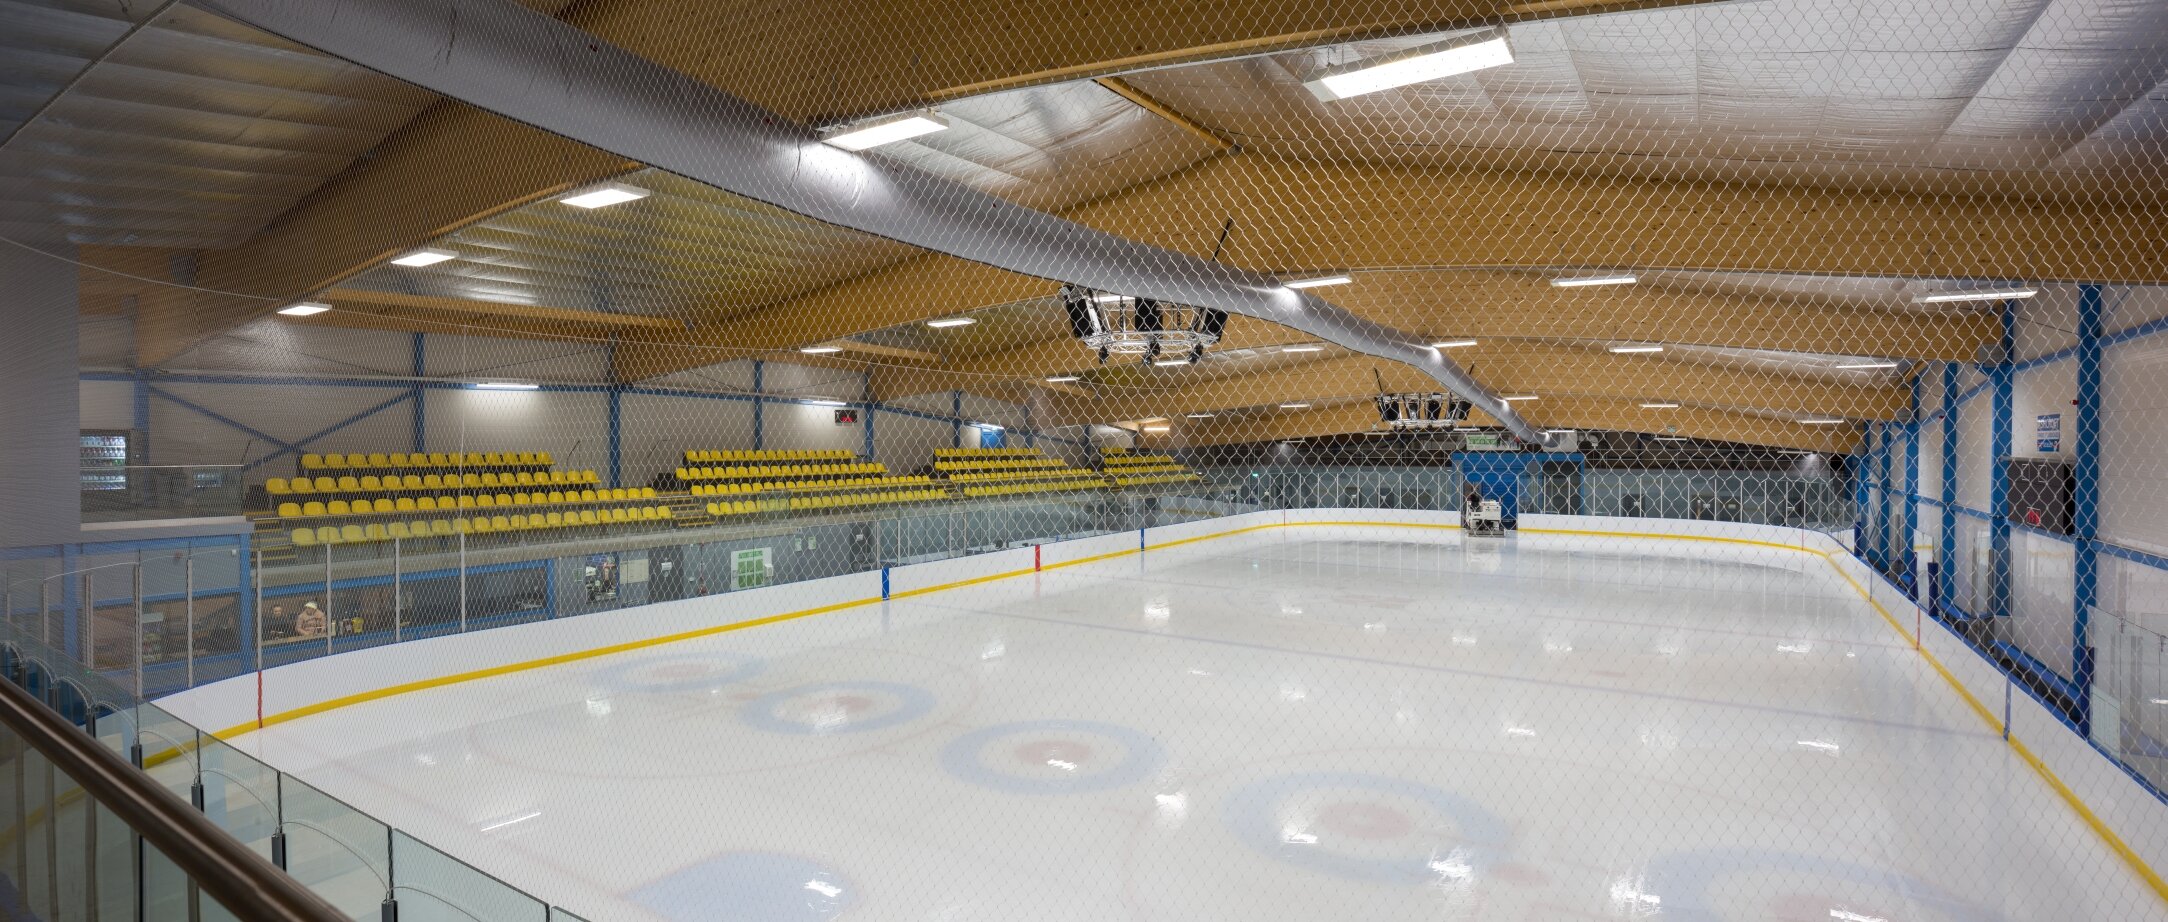 MSAP_QOCA_Cambridge Ice Arena_IMG_0632-Pano.jpg